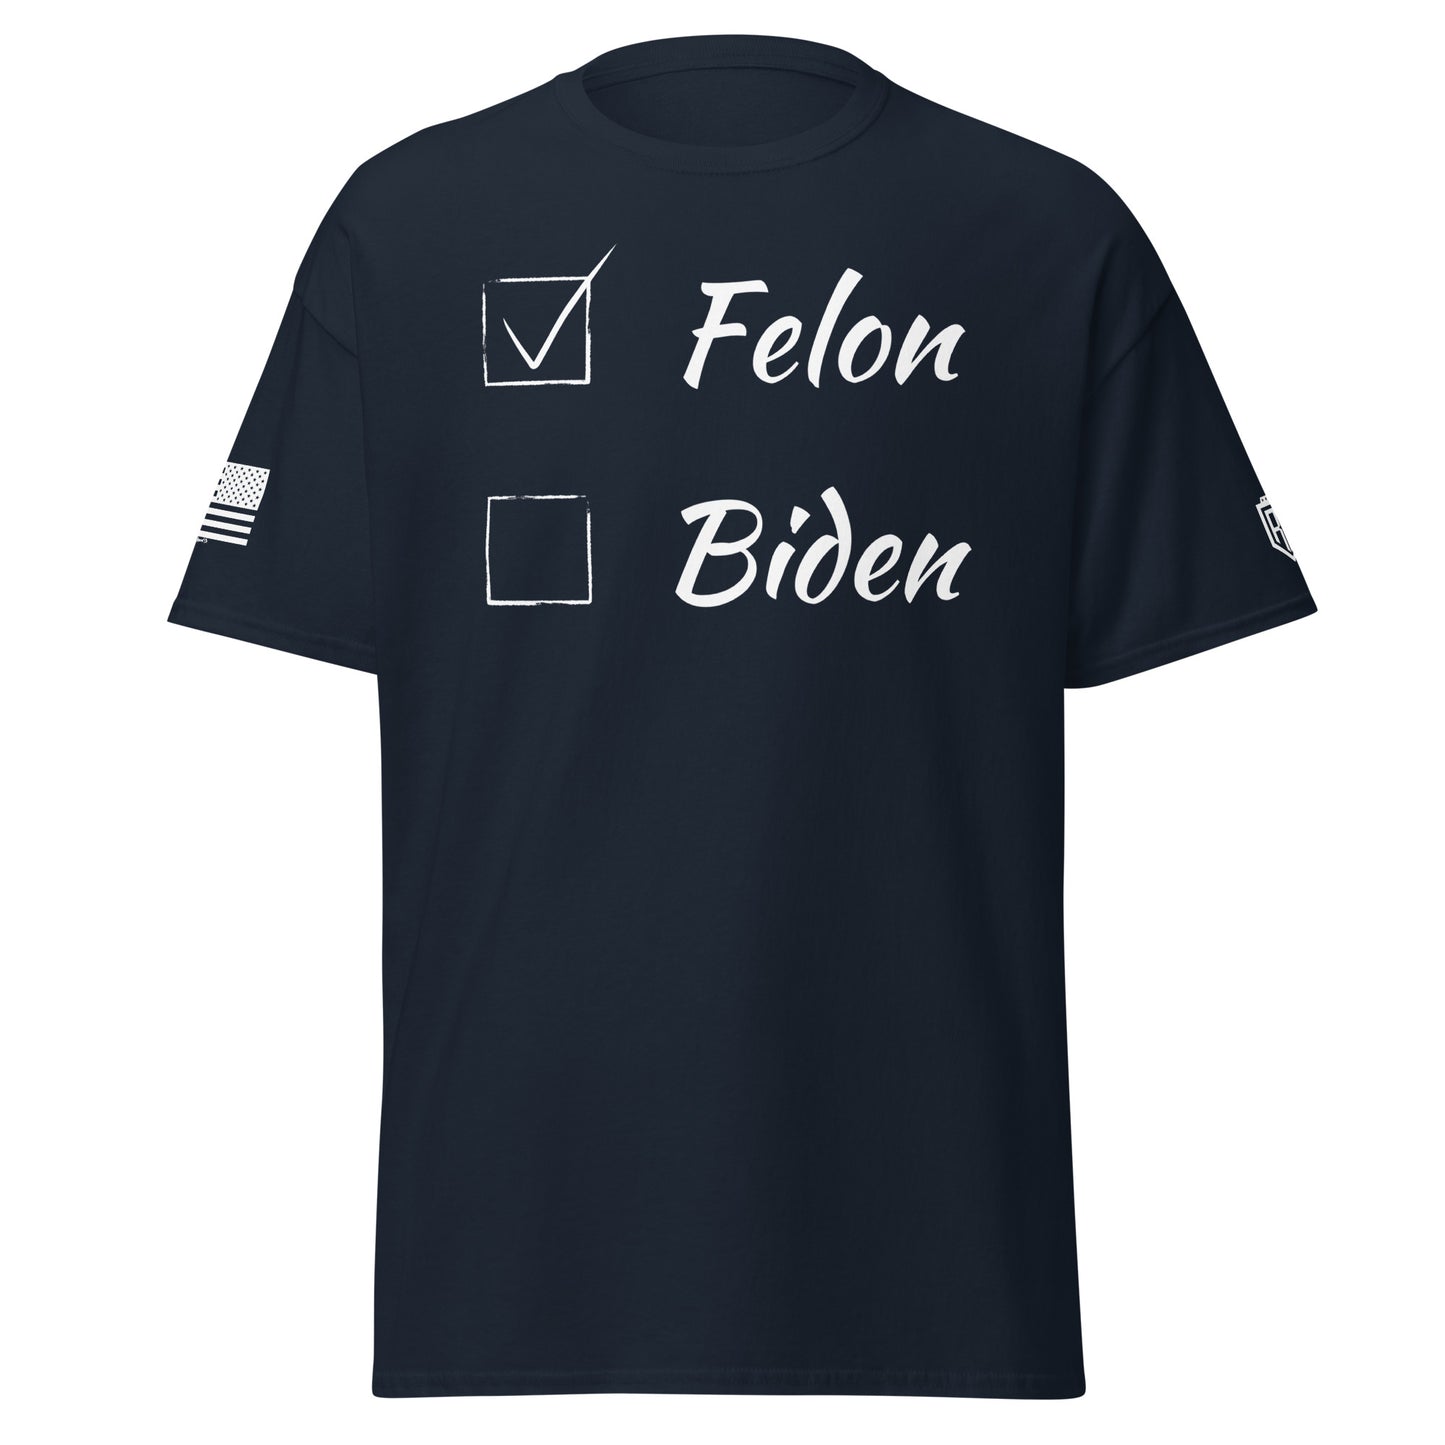 Vote for Felon or Biden T-Shirt